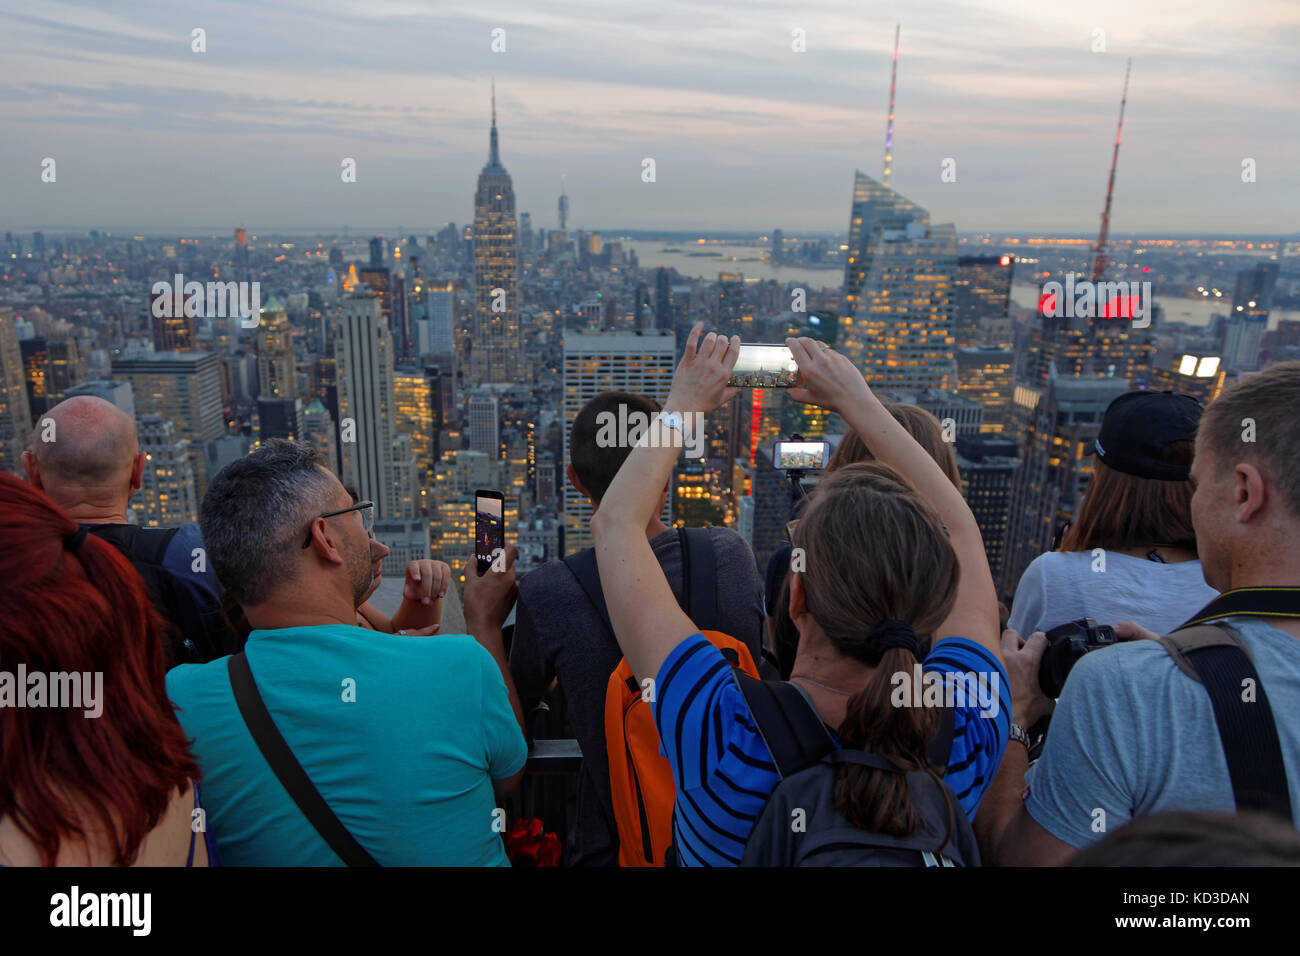 La CIUDAD DE NUEVA YORK, ESTADOS UNIDOS, 12 de septiembre de 2017 : Una multitud de turistas que toman fotografías de edificios con cámaras y smartphones al atardecer Foto de stock